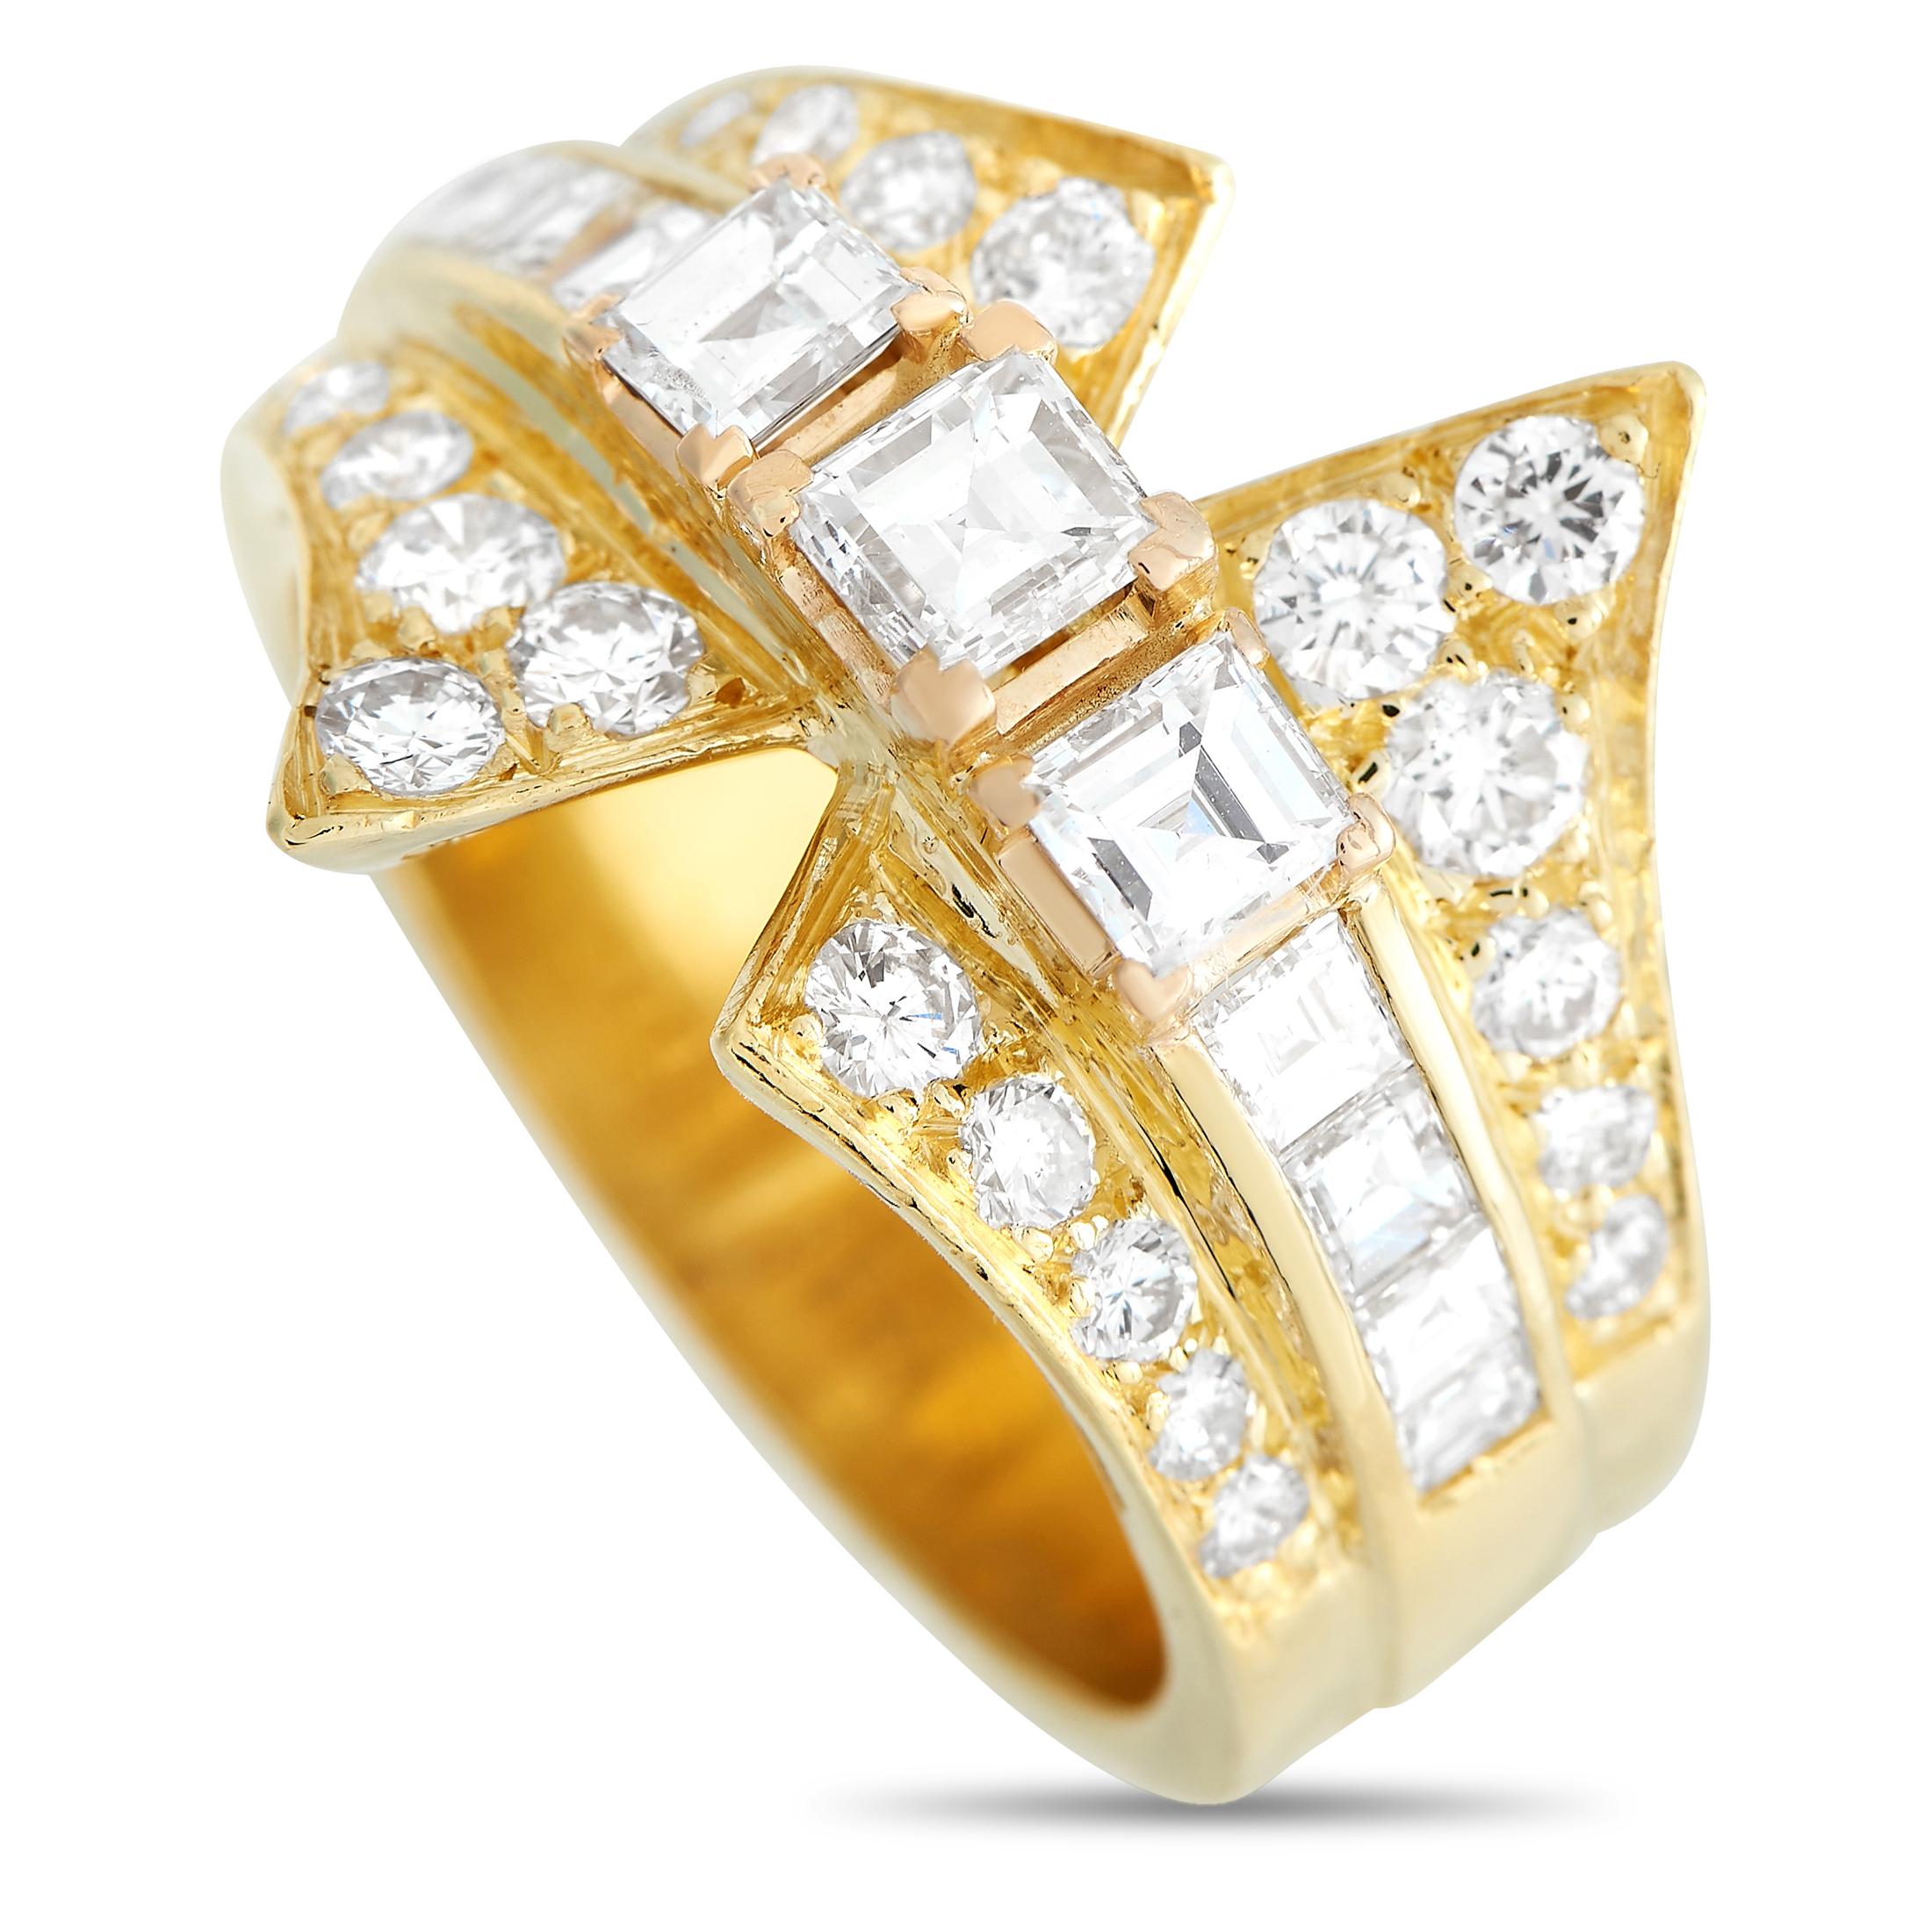 Mixed Cut LB Exclusive 18k Yellow Gold 2.25 Carat Diamond Ring